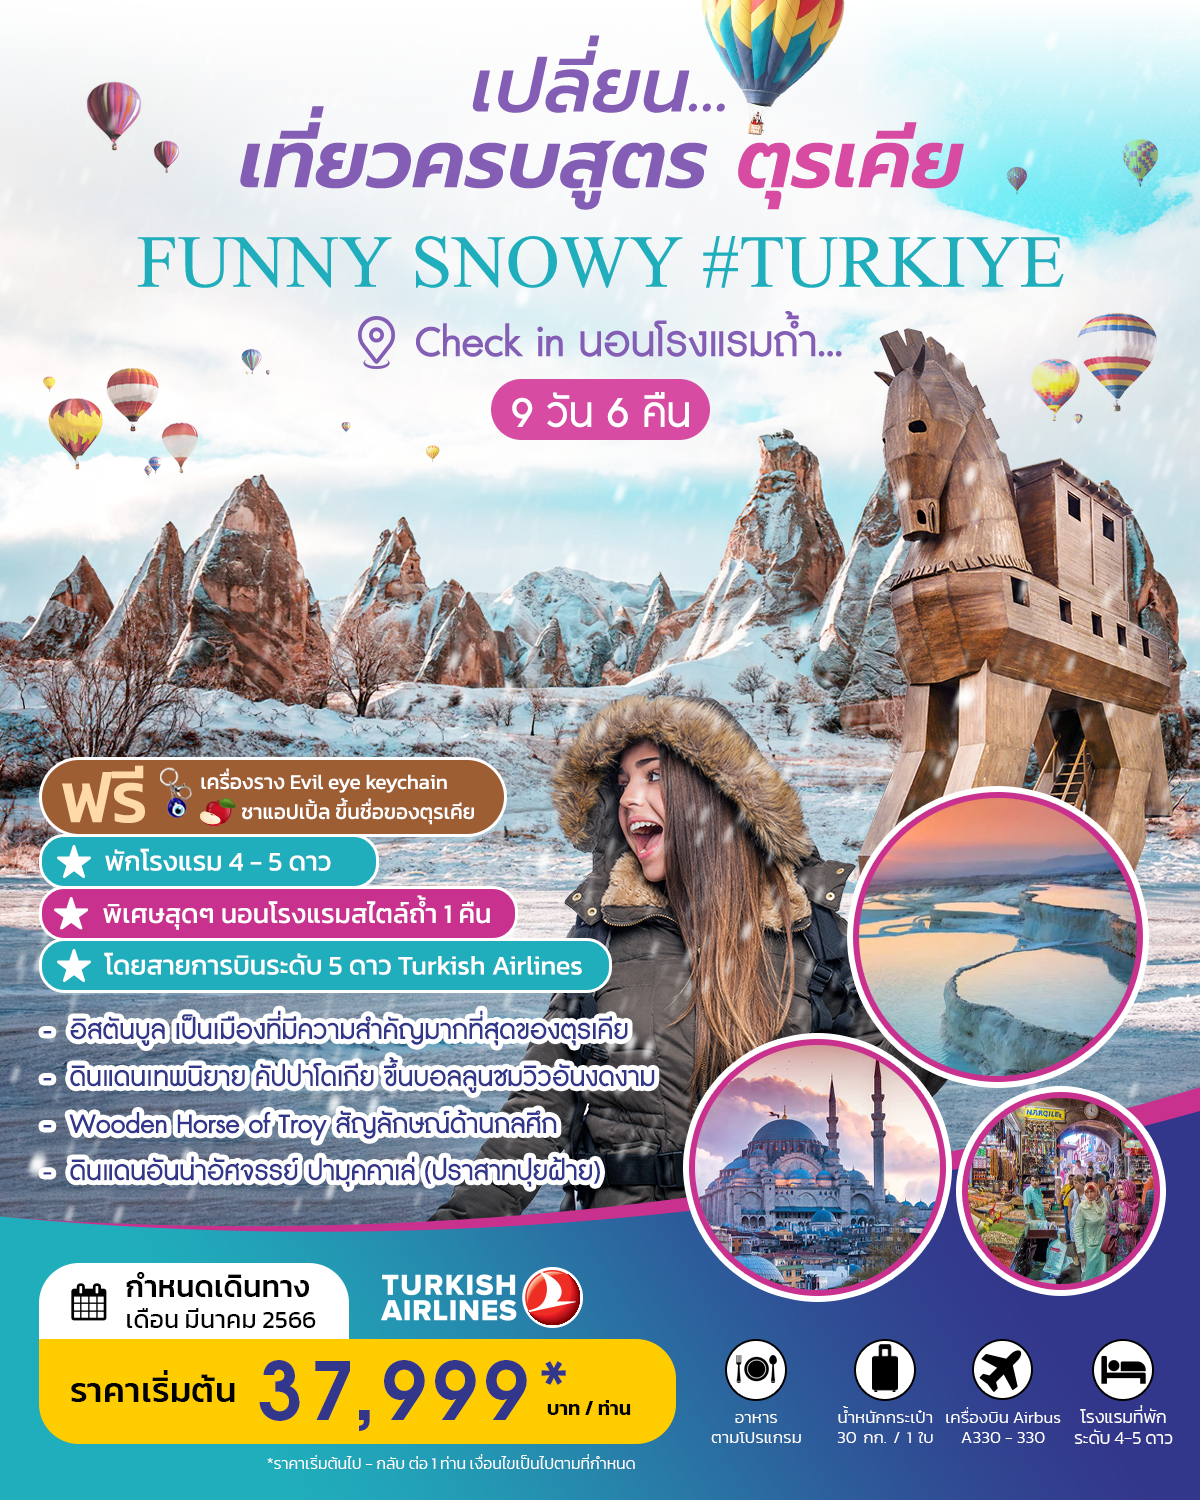 เปลี่ยน เที่ยวครบสูตร ตุรกี  TURKIYE  FUNNY SNOWY 2023 บินตรง 5 ดาว  มีนาคม 2023